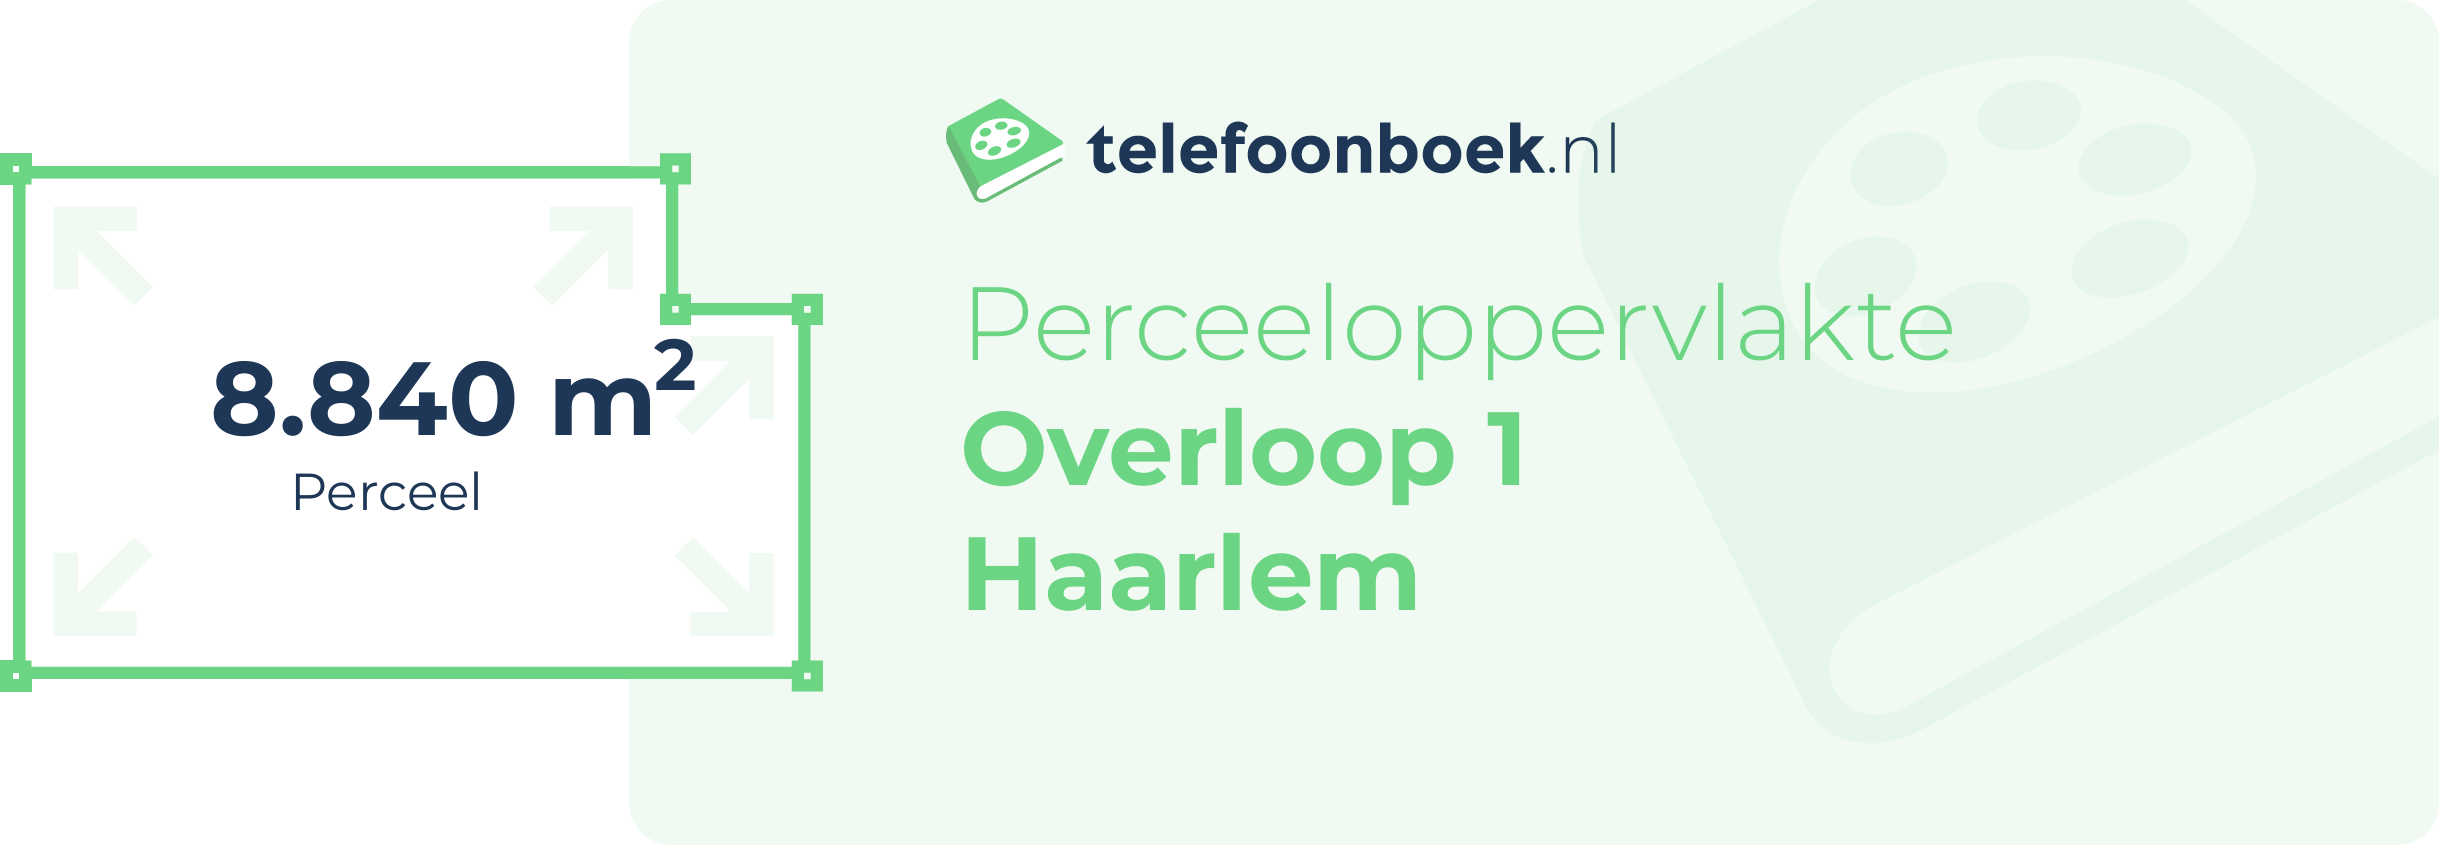 Perceeloppervlakte Overloop 1 Haarlem